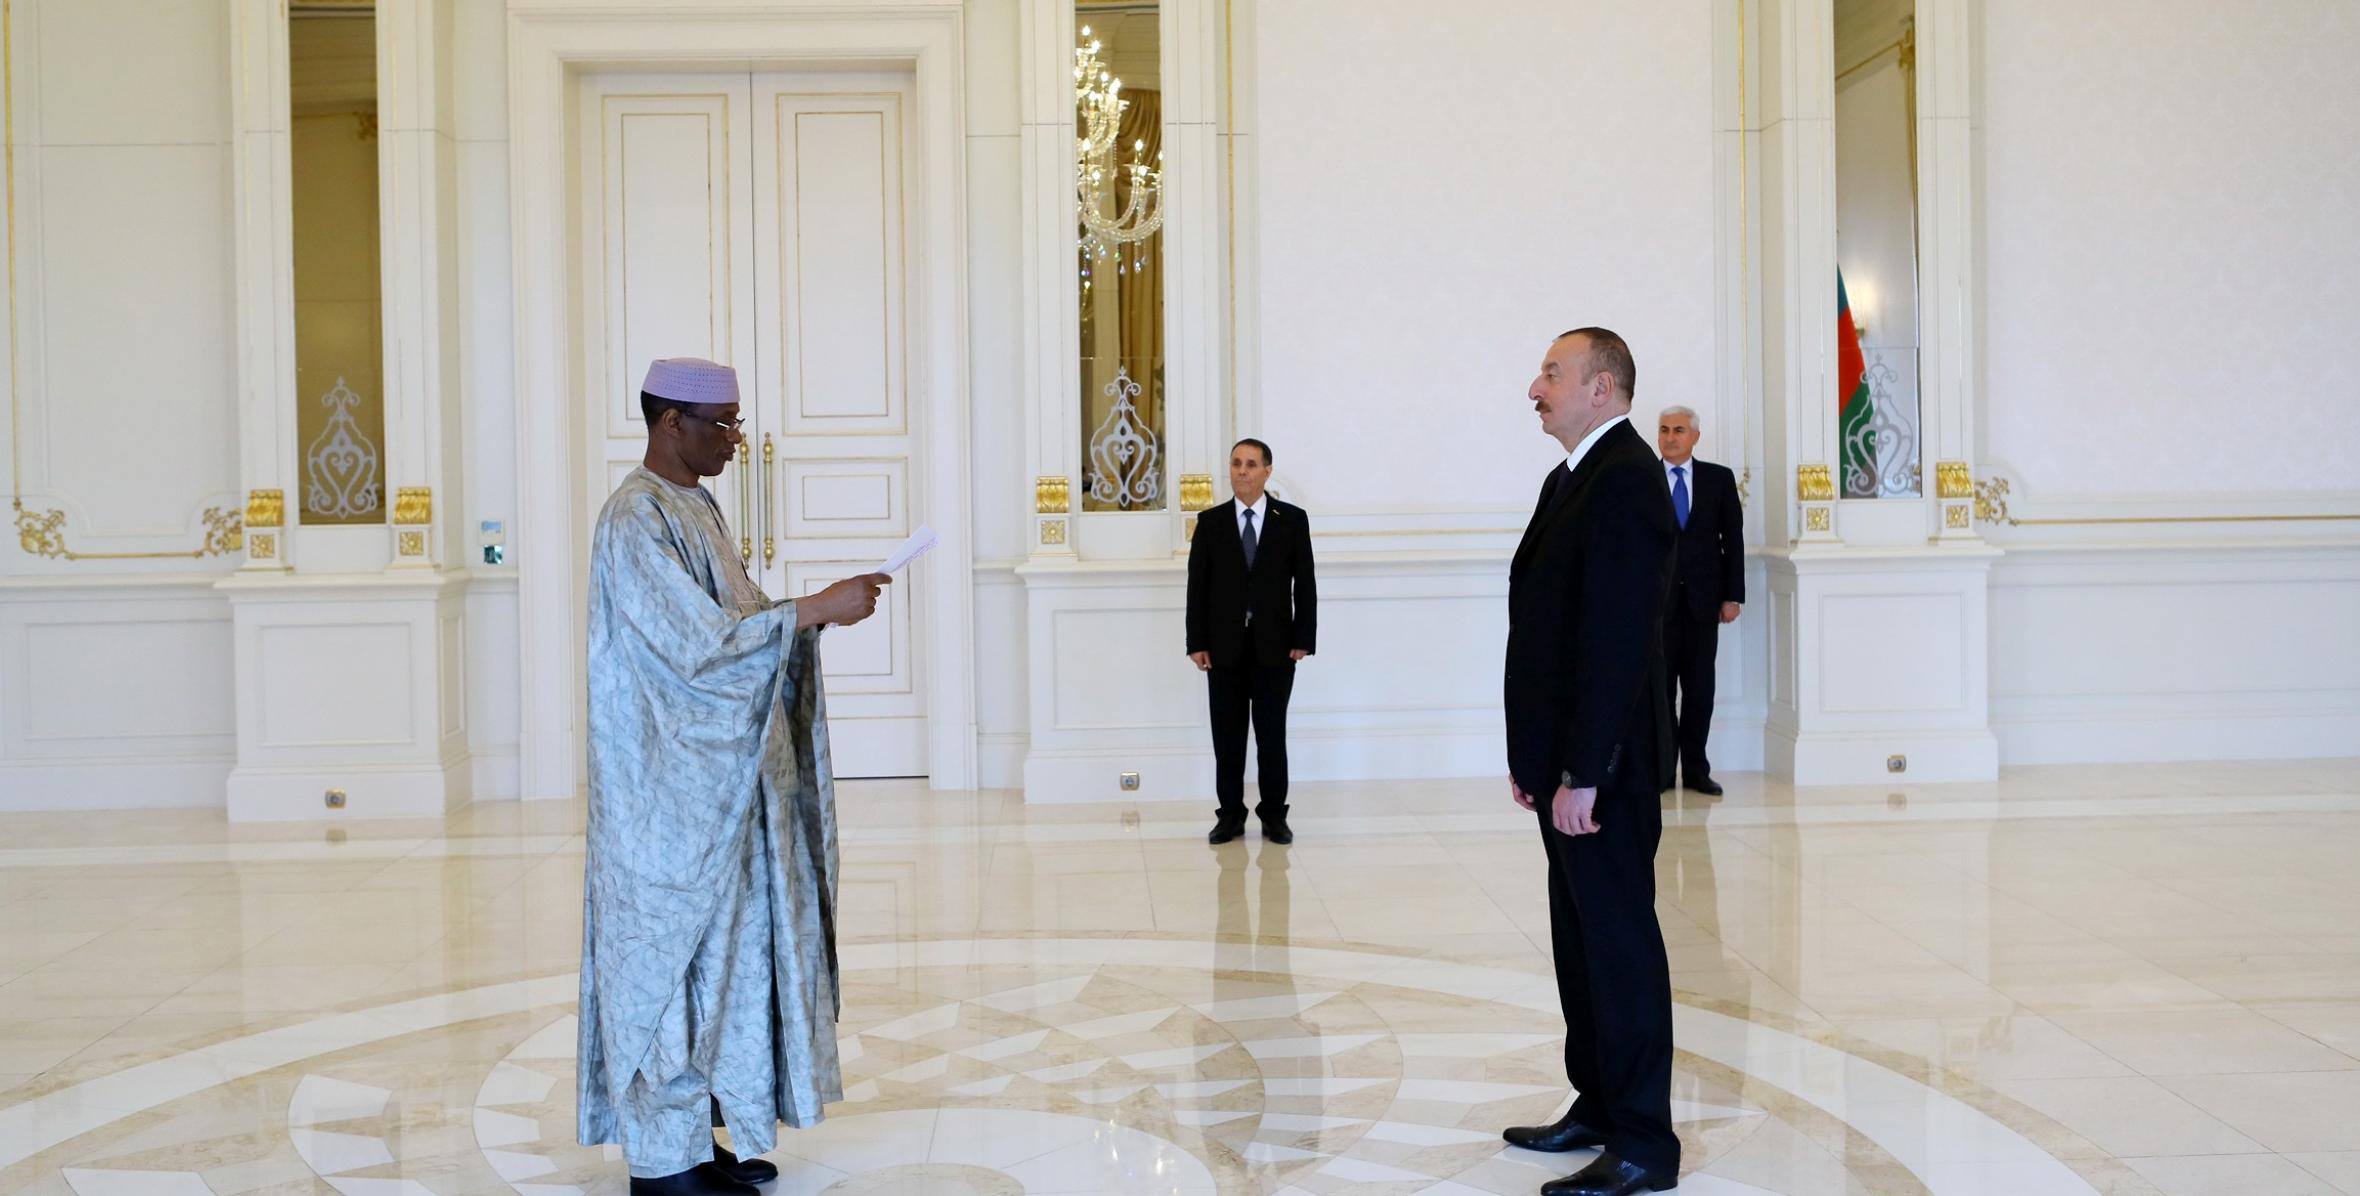 Ильхам Алиев принял верительные грамоты новоназначенного посла Мали в Азербайджане